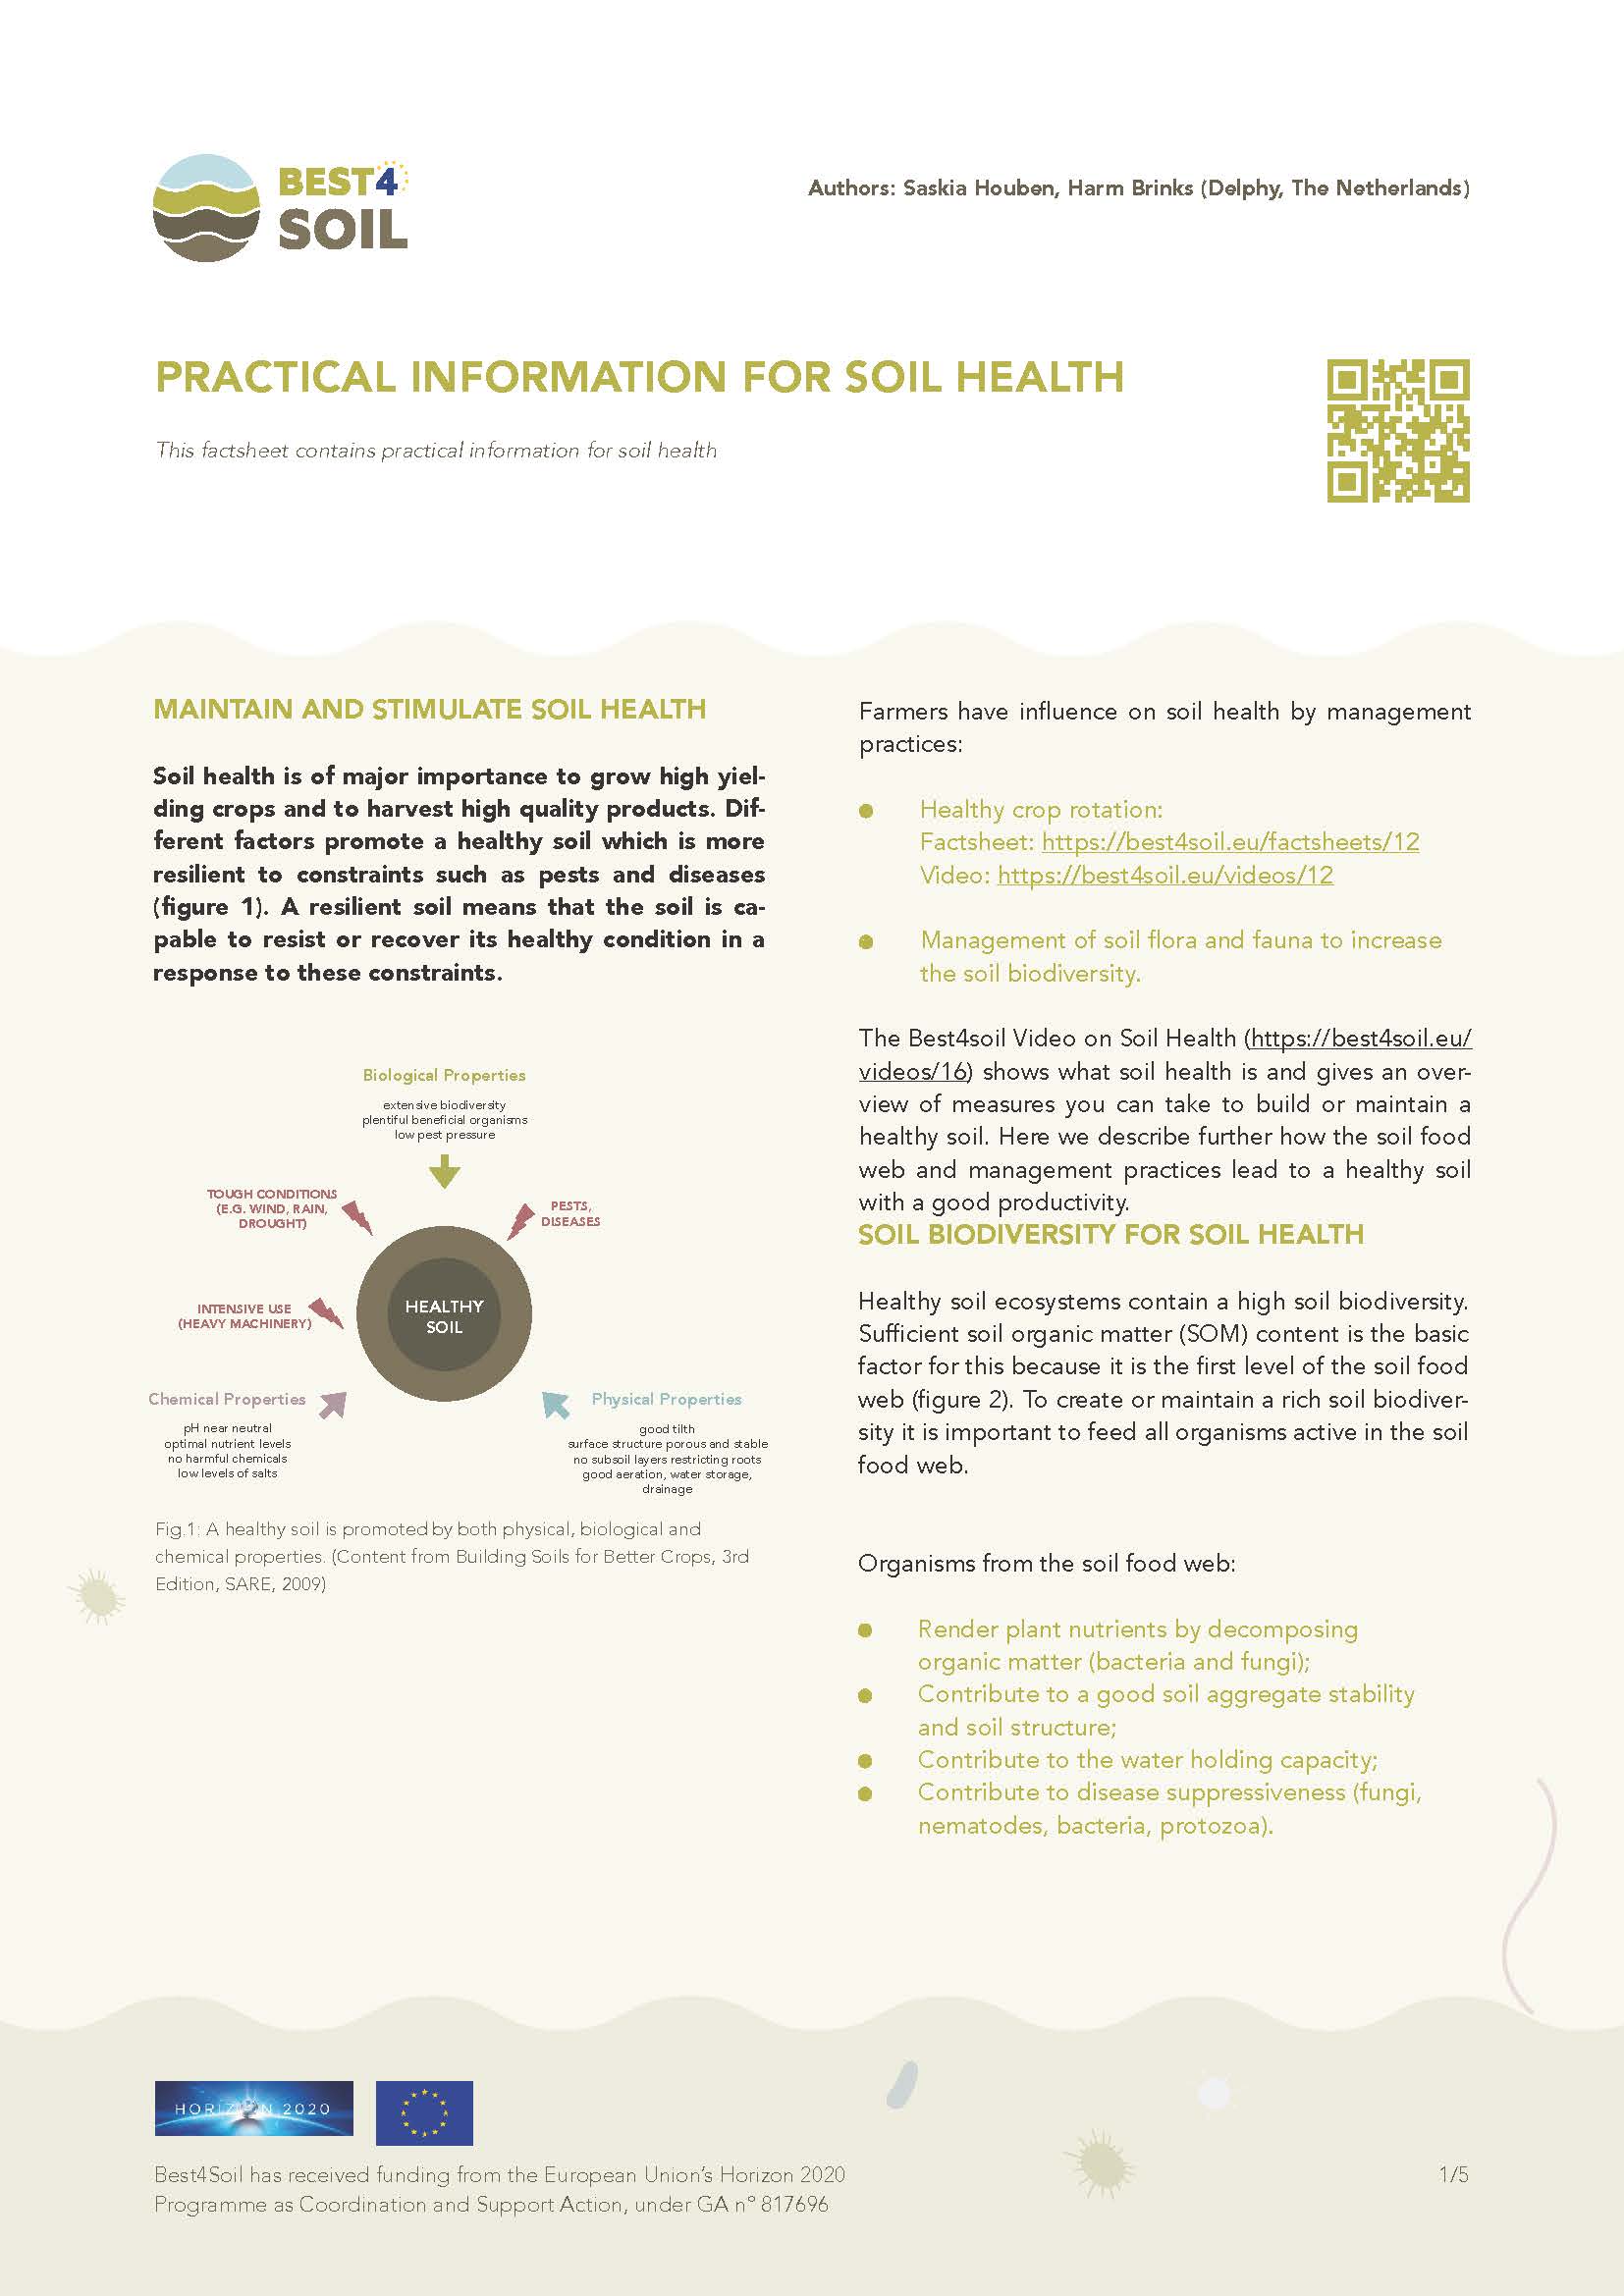 Gyakorlati információk a talaj egészségéhez (Best4Soil adatlap)